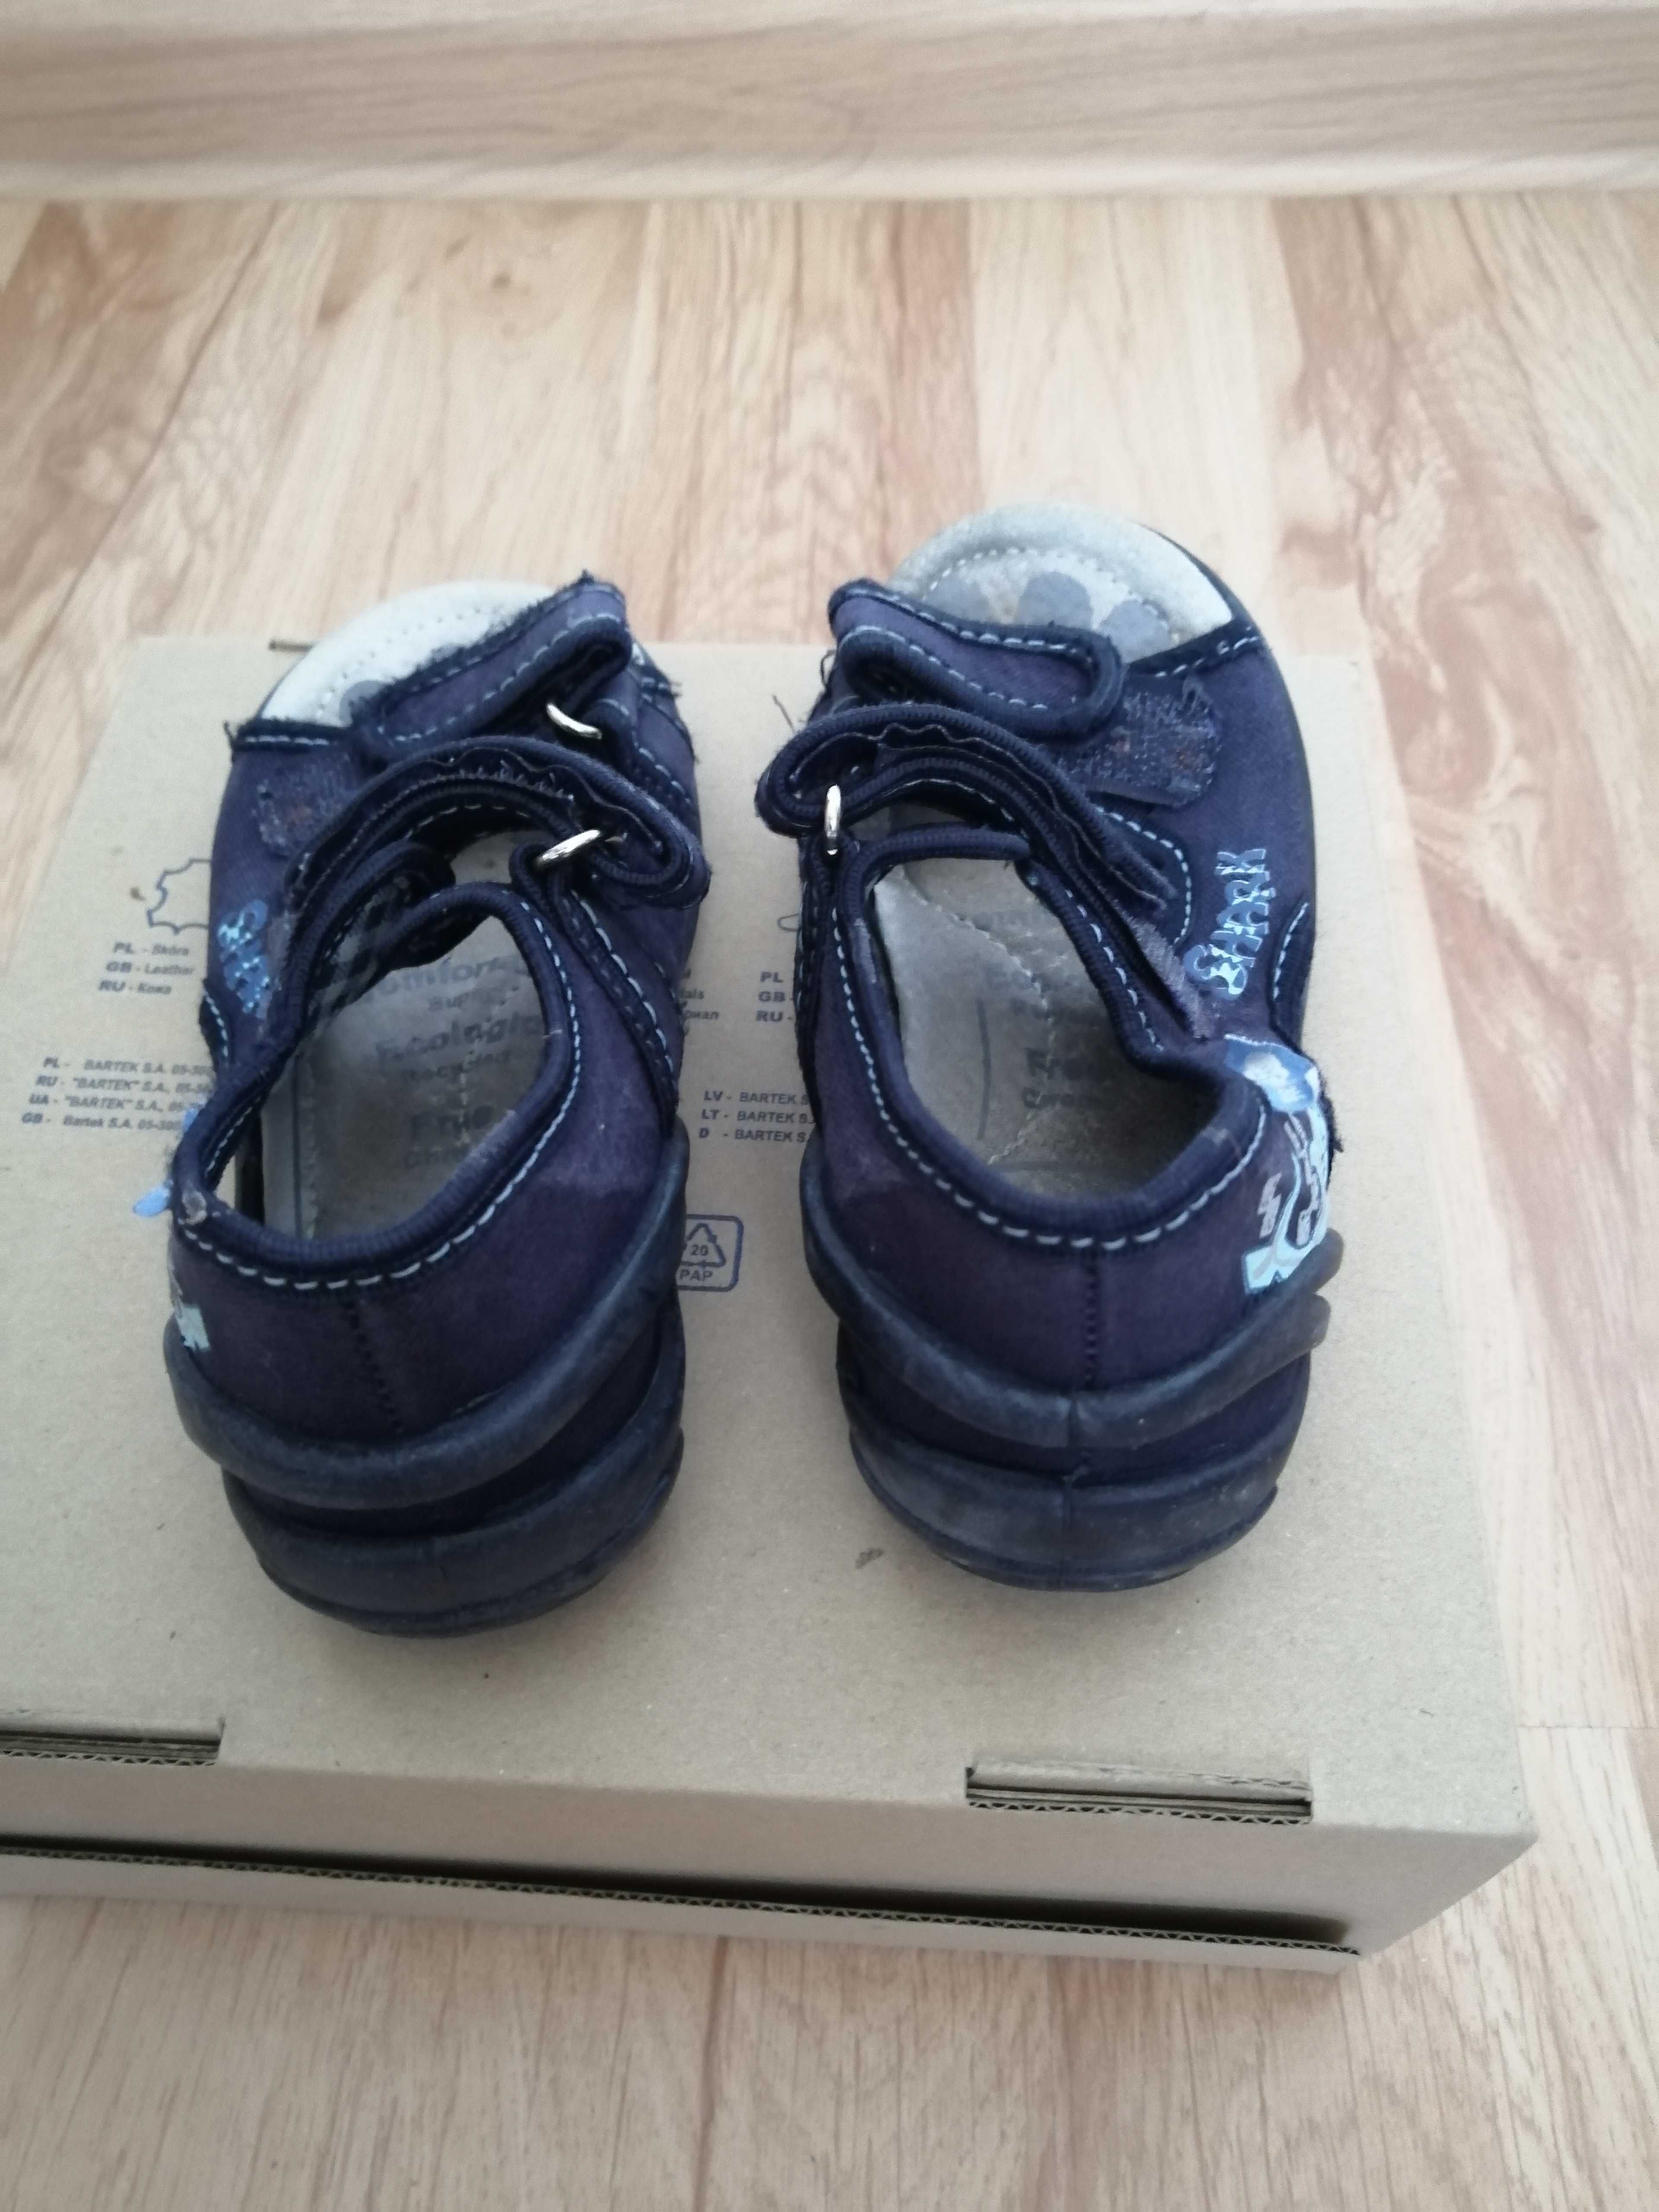 Buty sandałki dziecięce rozmiar 26 RenBut, skóra, jak nowe, na rzep